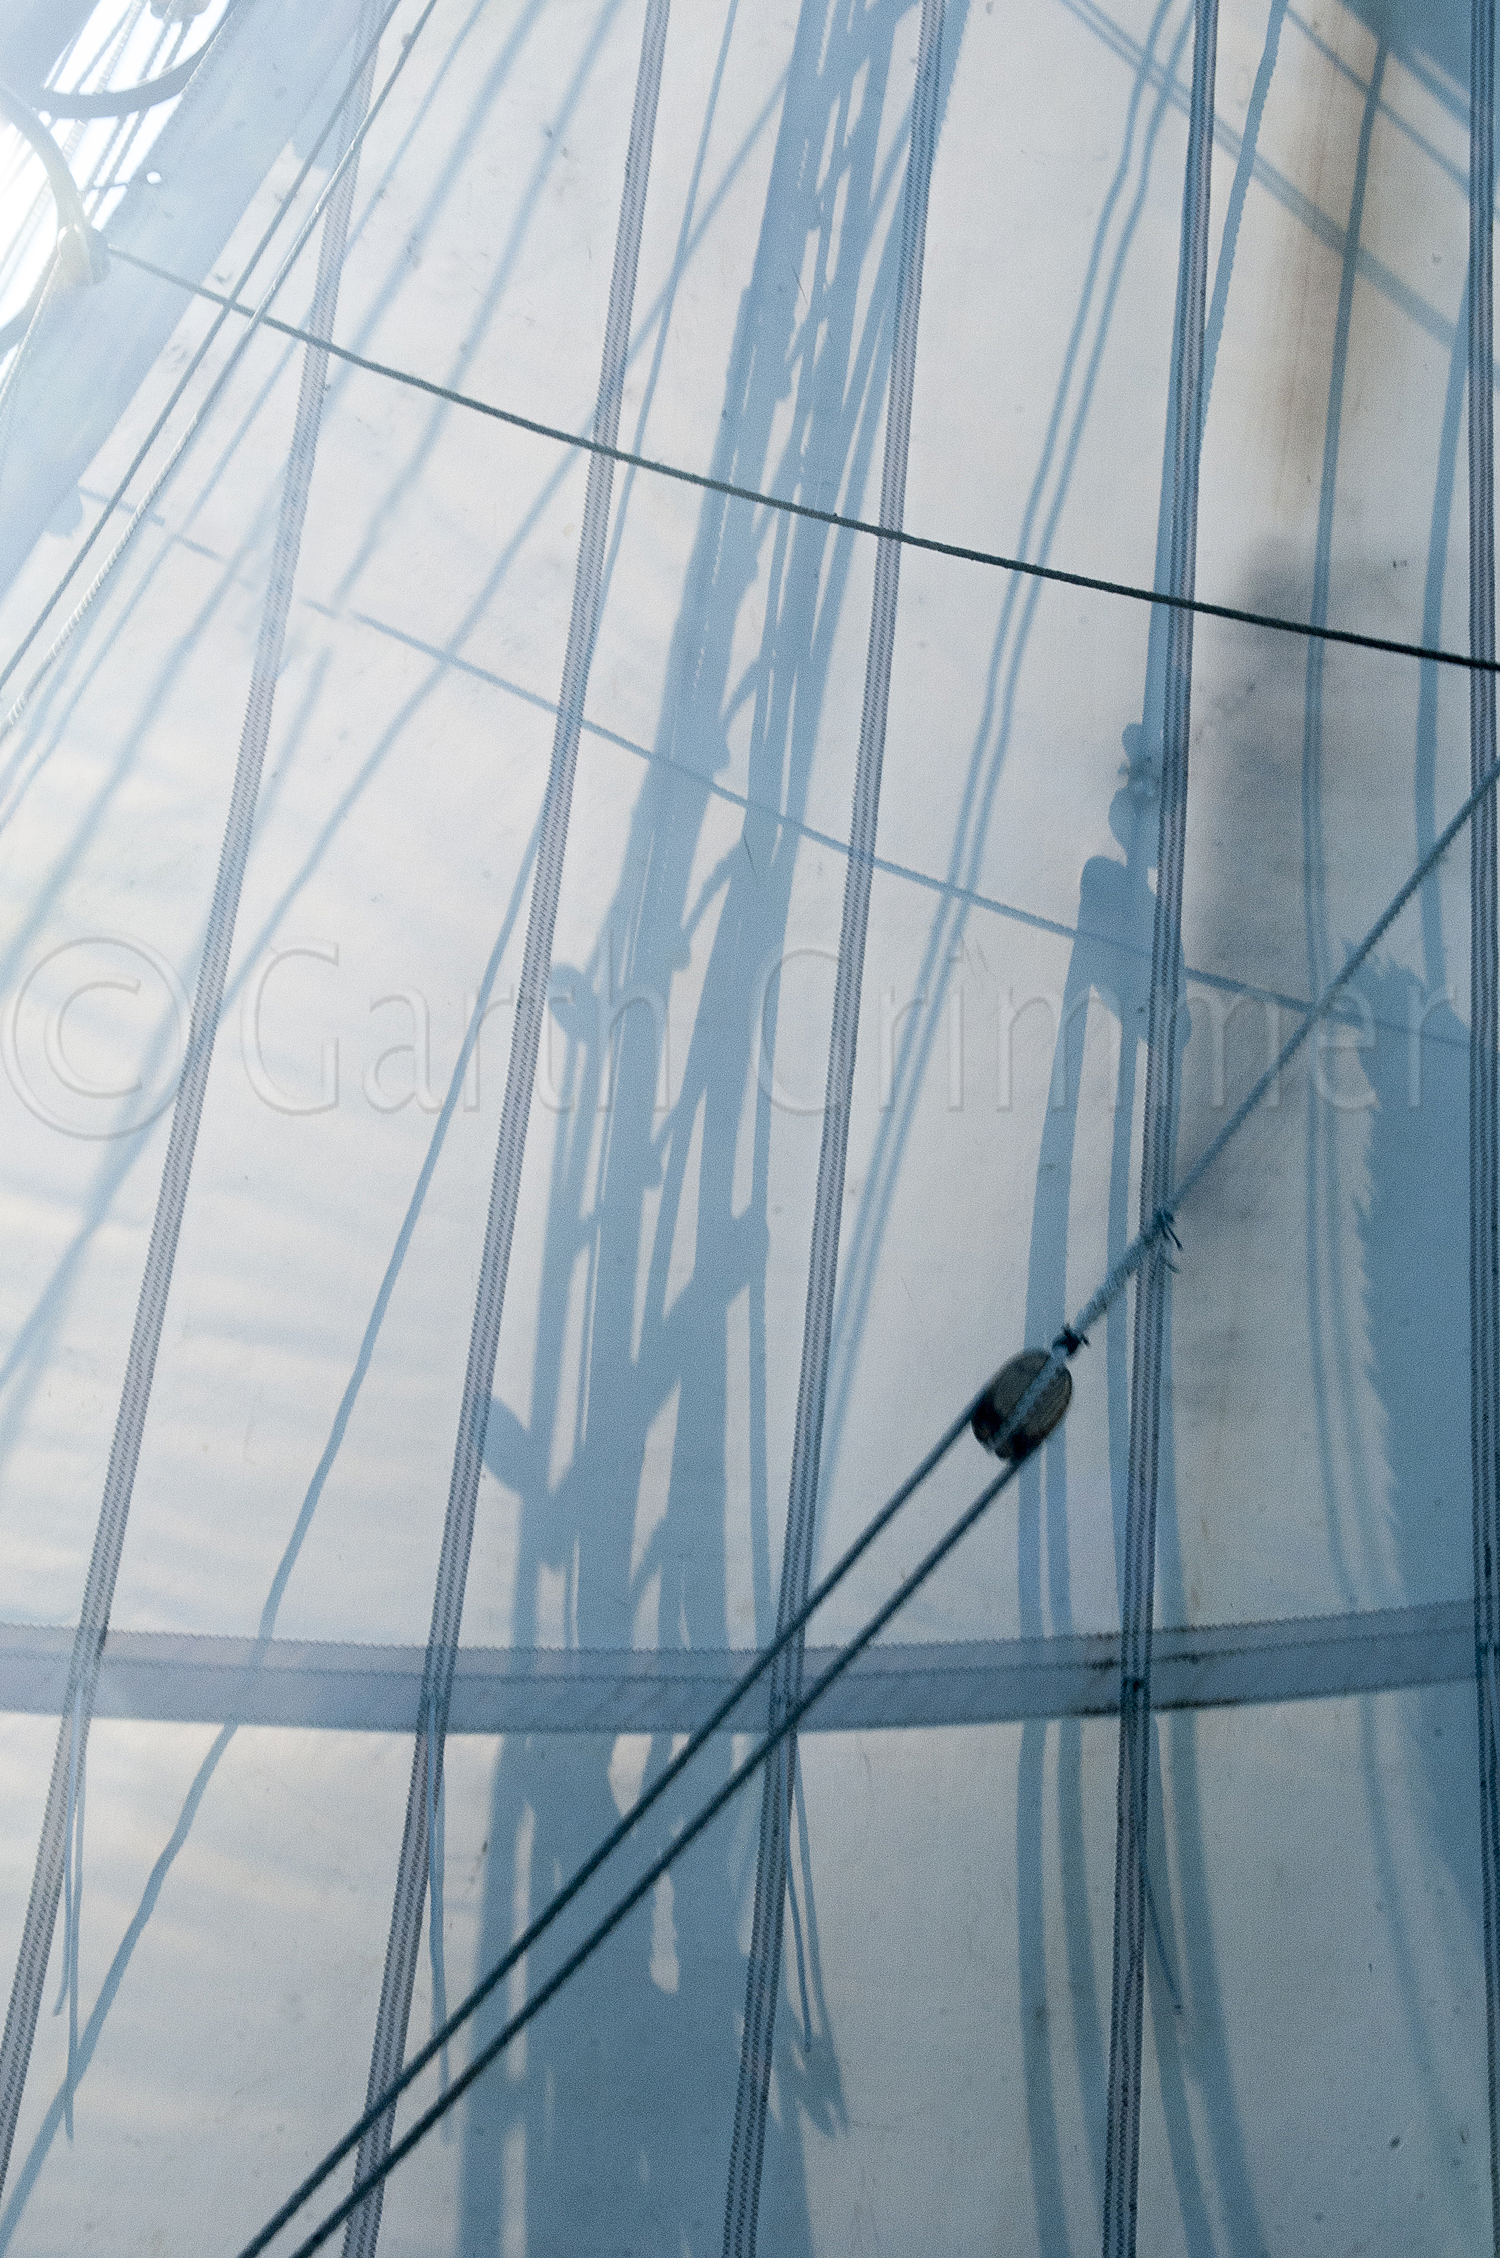 Shadows on the sail of tall ship Lynx